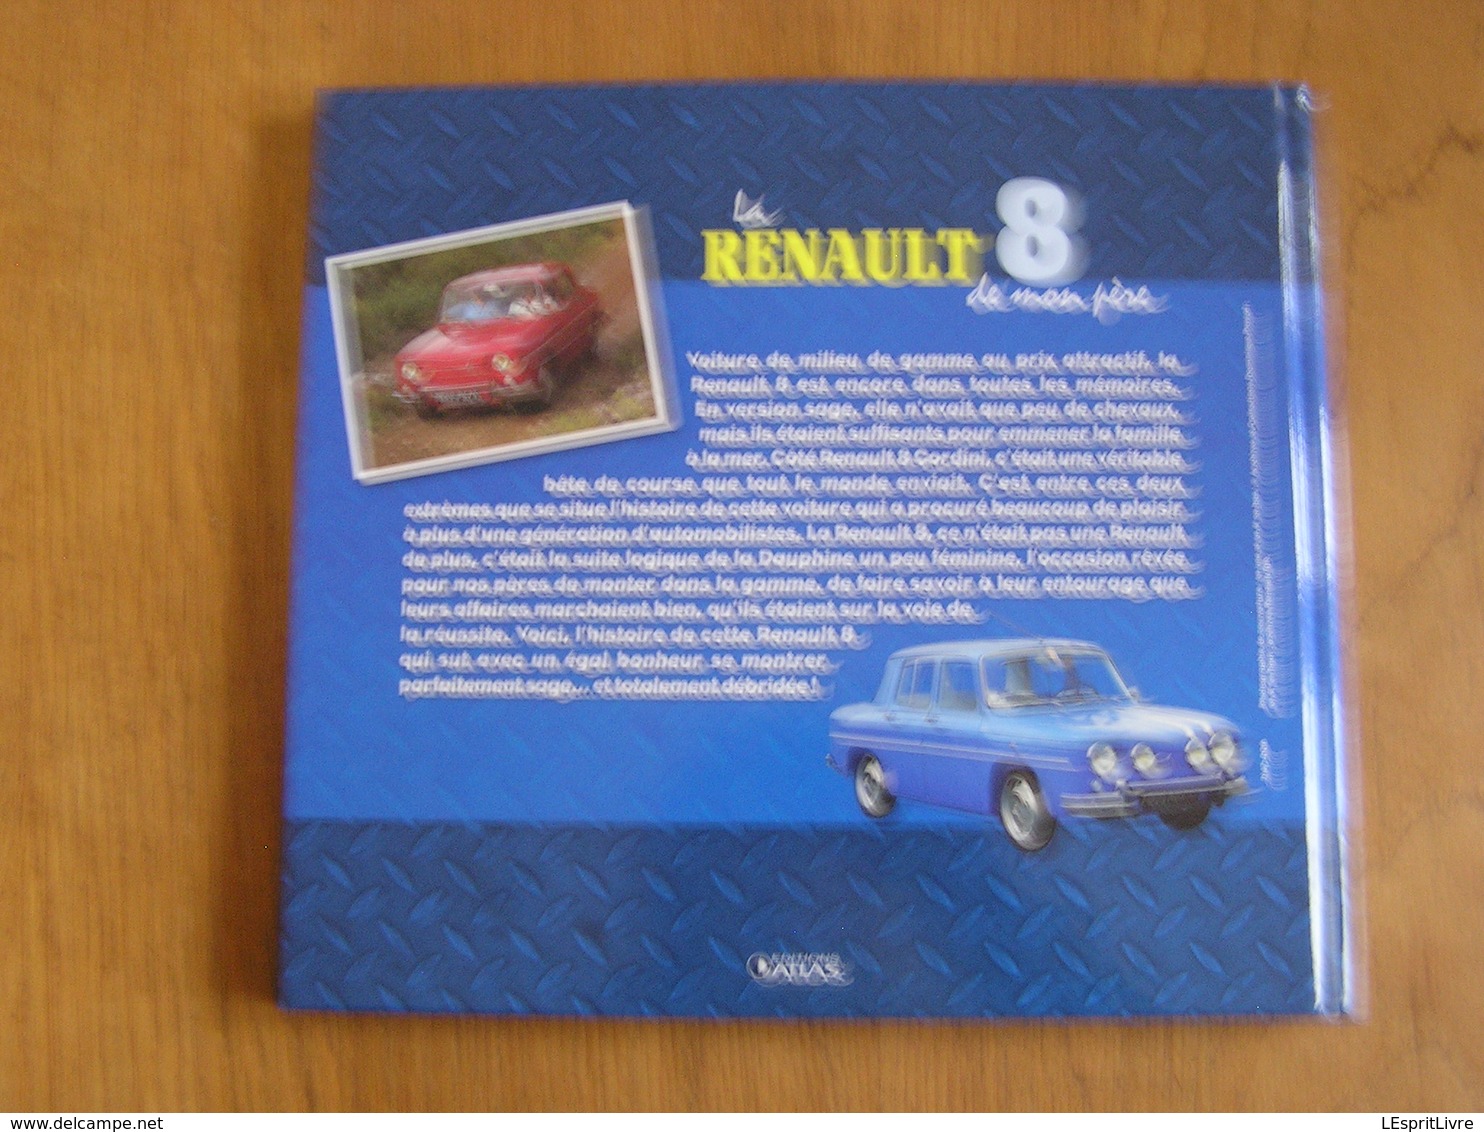 LA RENAULT 8 DE MON PERE Editions Atlas R8 Gordini R10 Auto Automobile Voiture Ancetre Old Vintage French Car Rallye